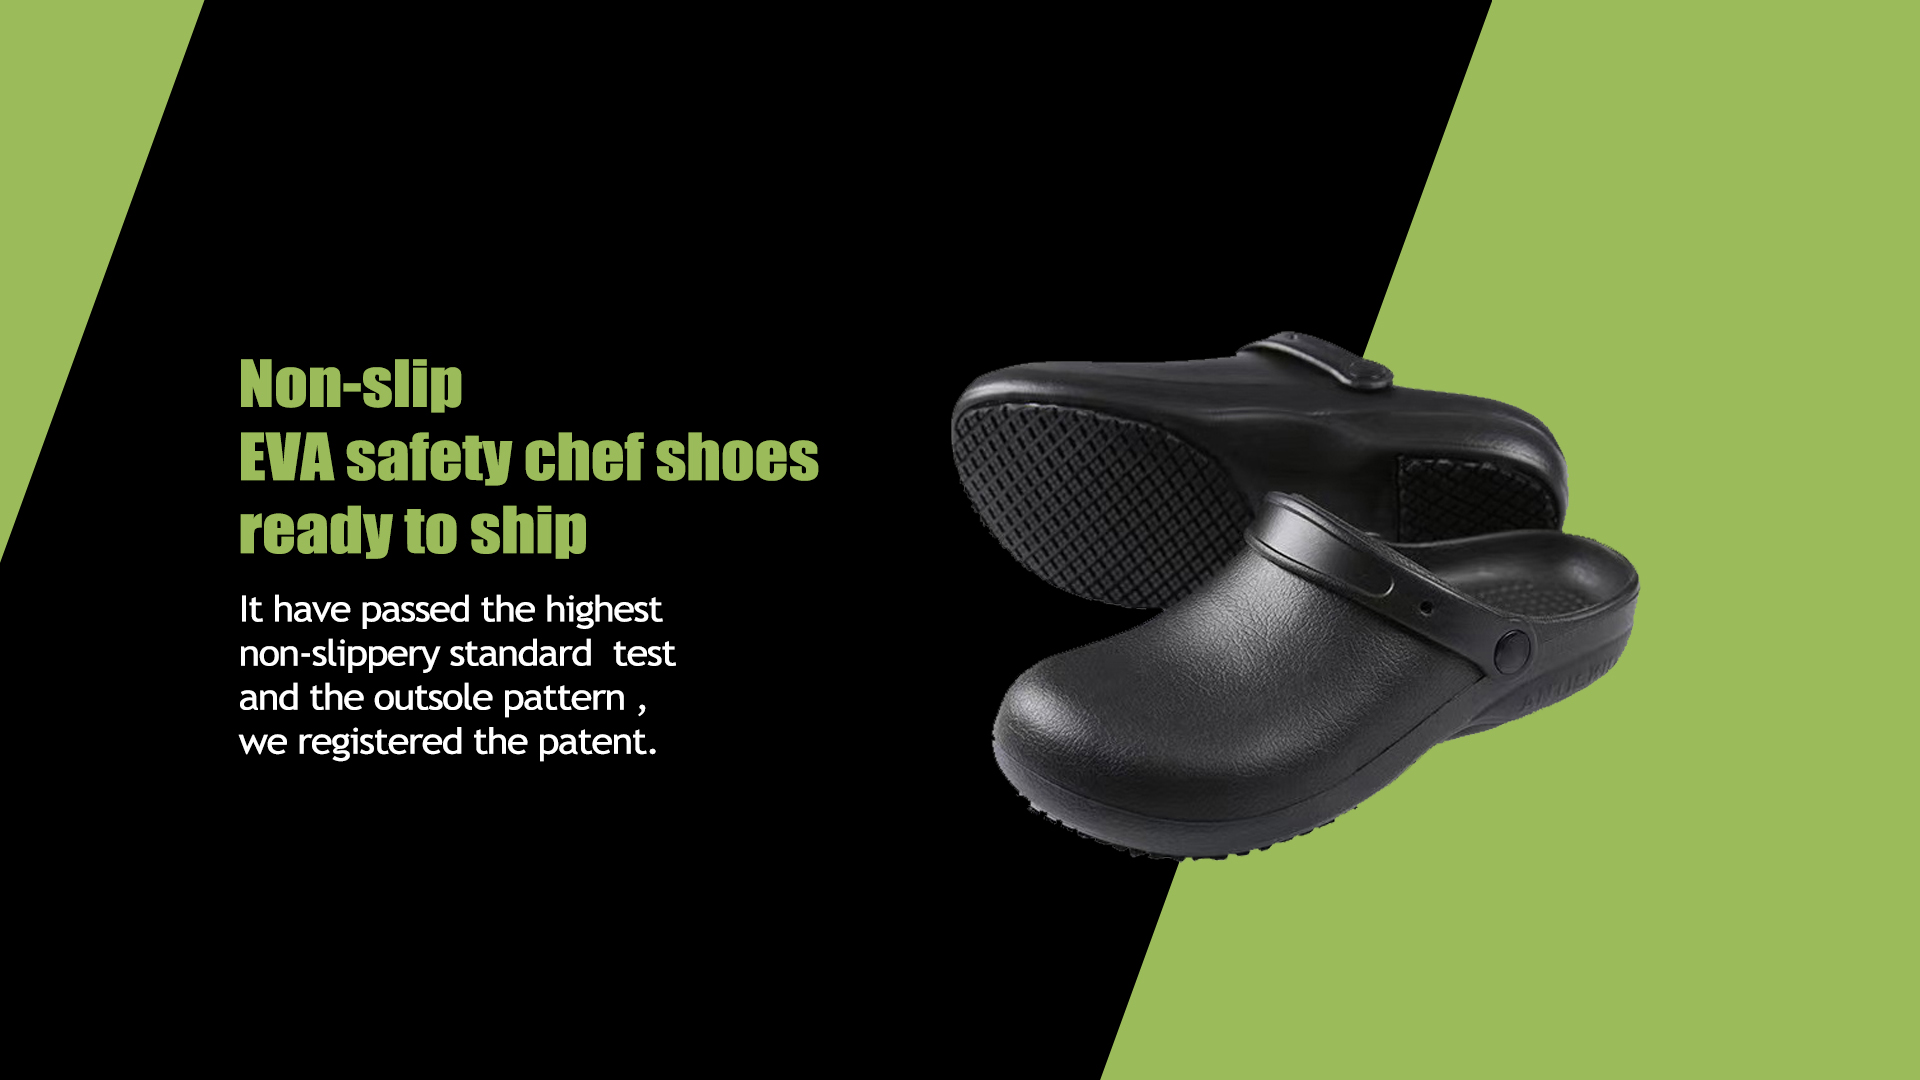 Non-slip EVA safety chef shoes ready to ship